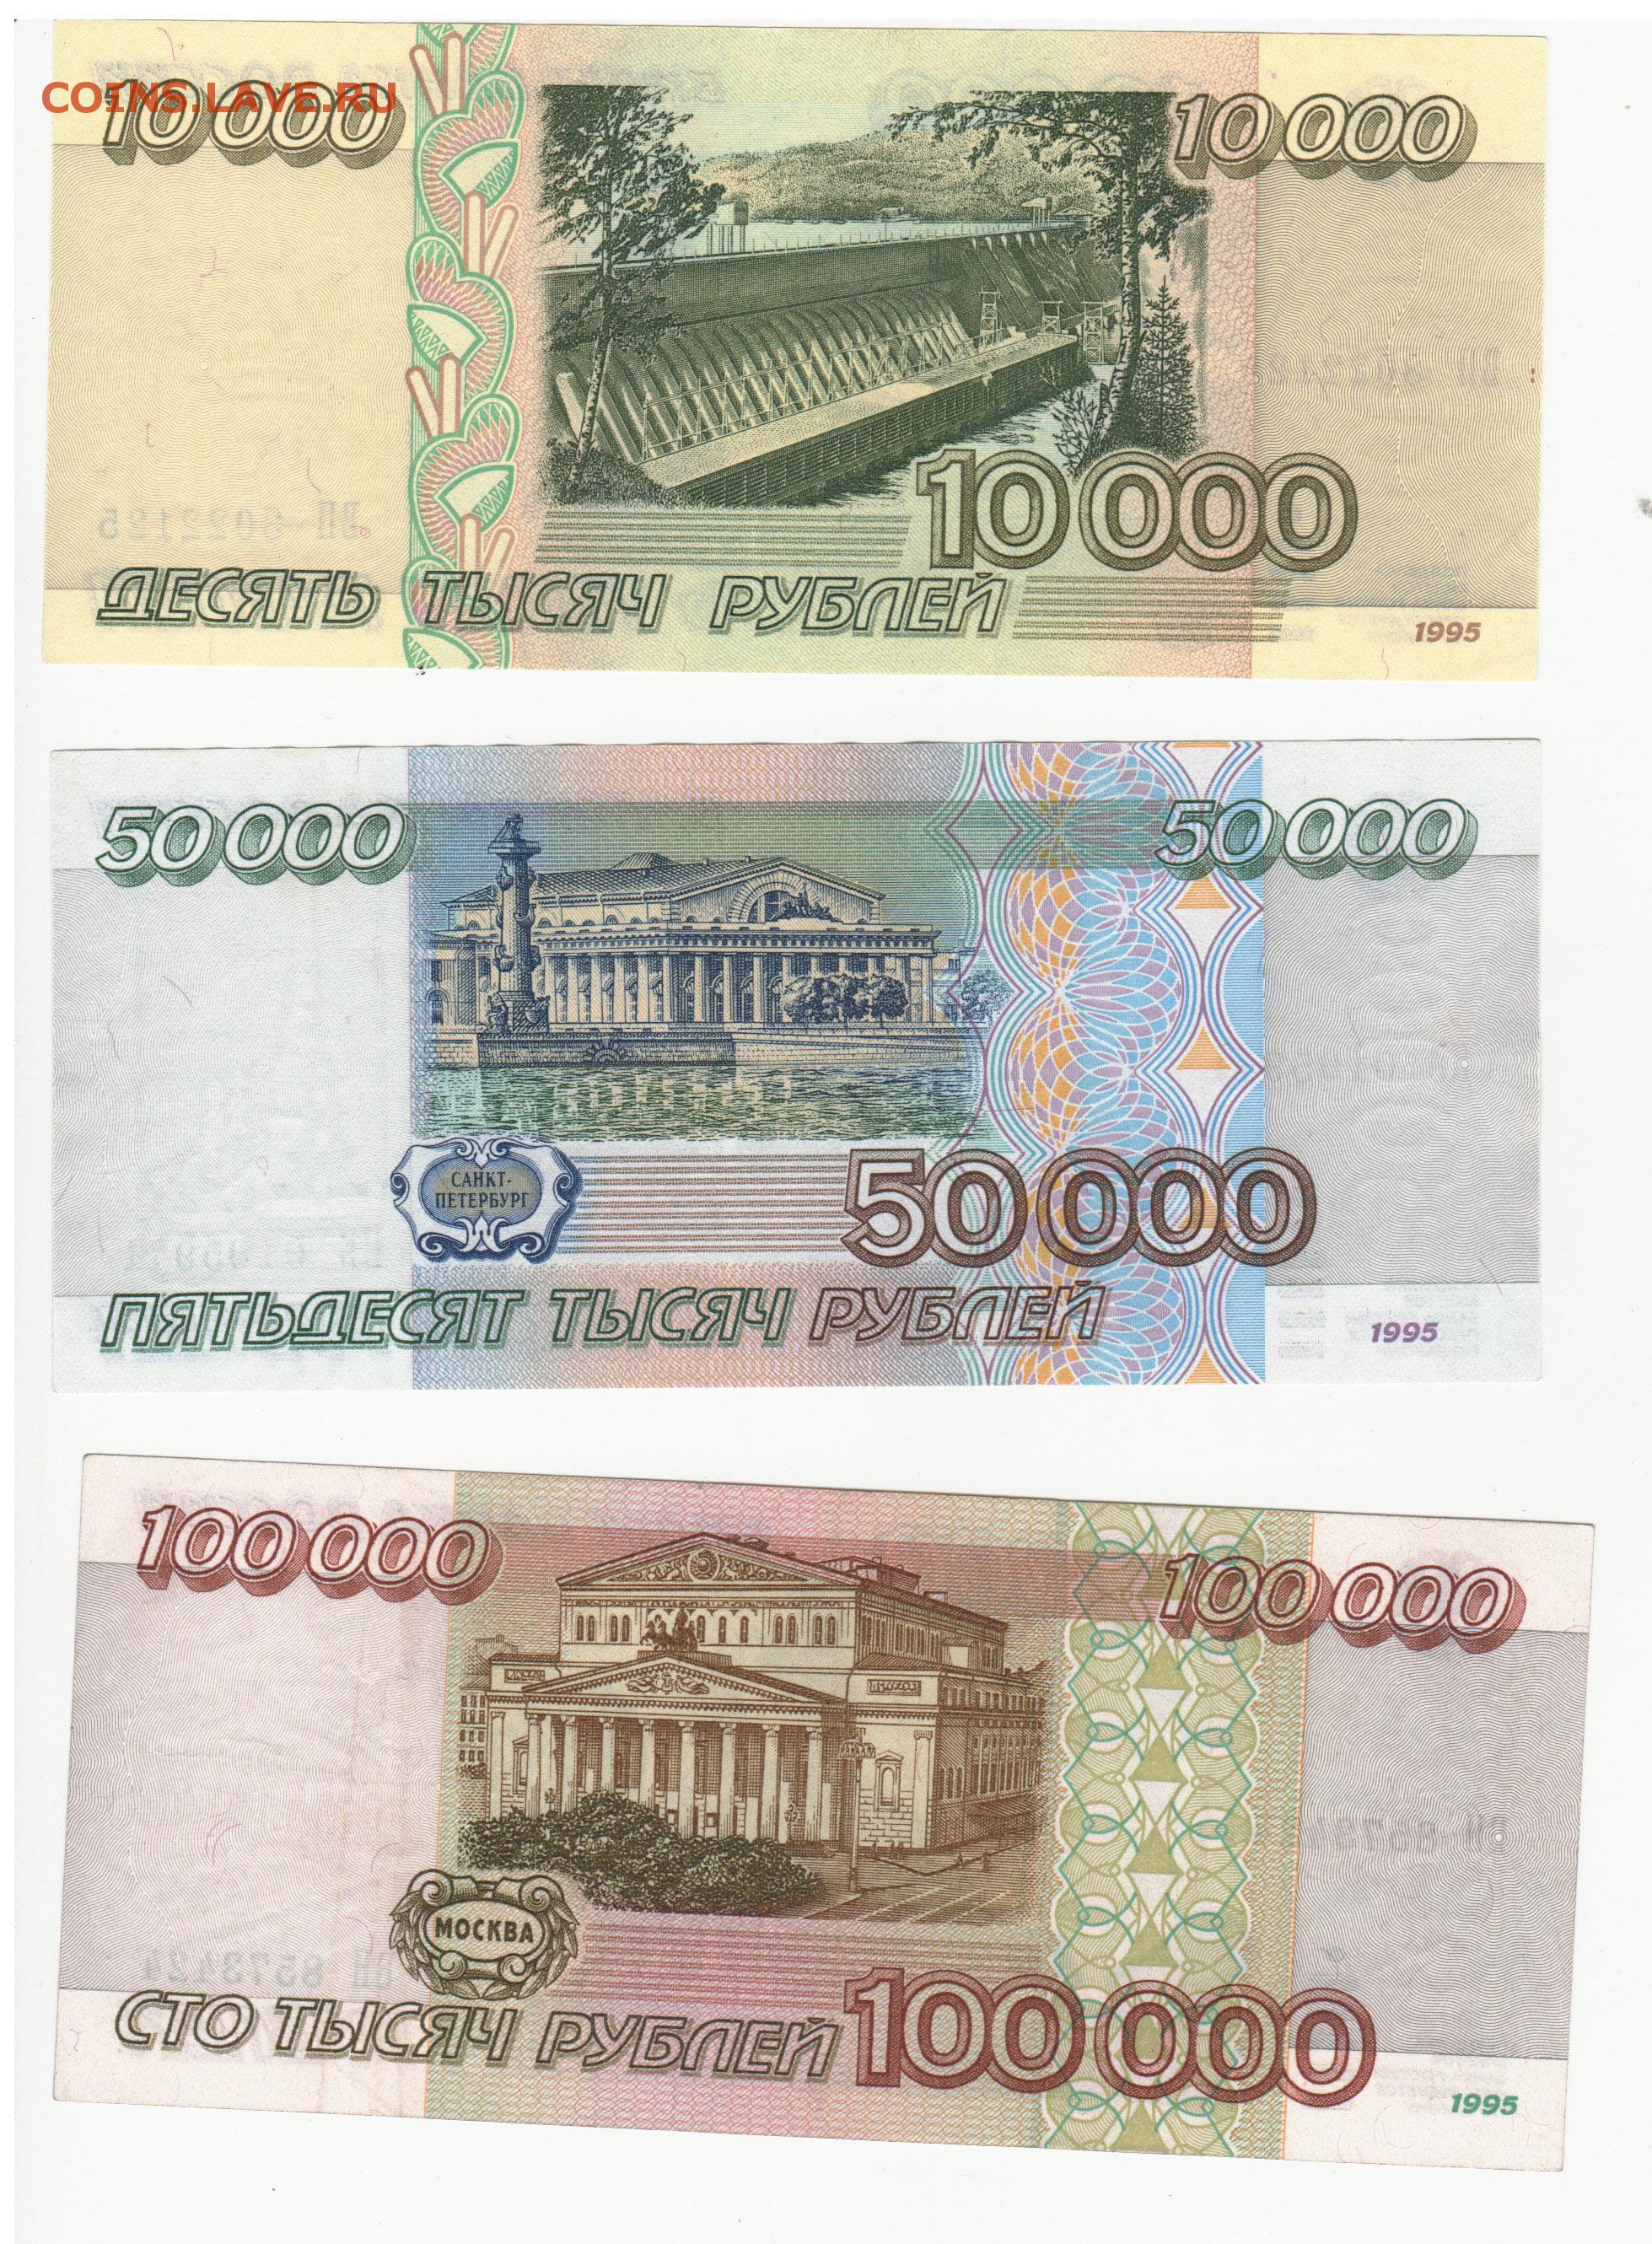 Деньги 100.000. 100000 Рублей 1995 года. Банкнота 100000 рублей 1995. 50 000 Рублей купюра 1995 года. СТО тысяч рублей купюра.